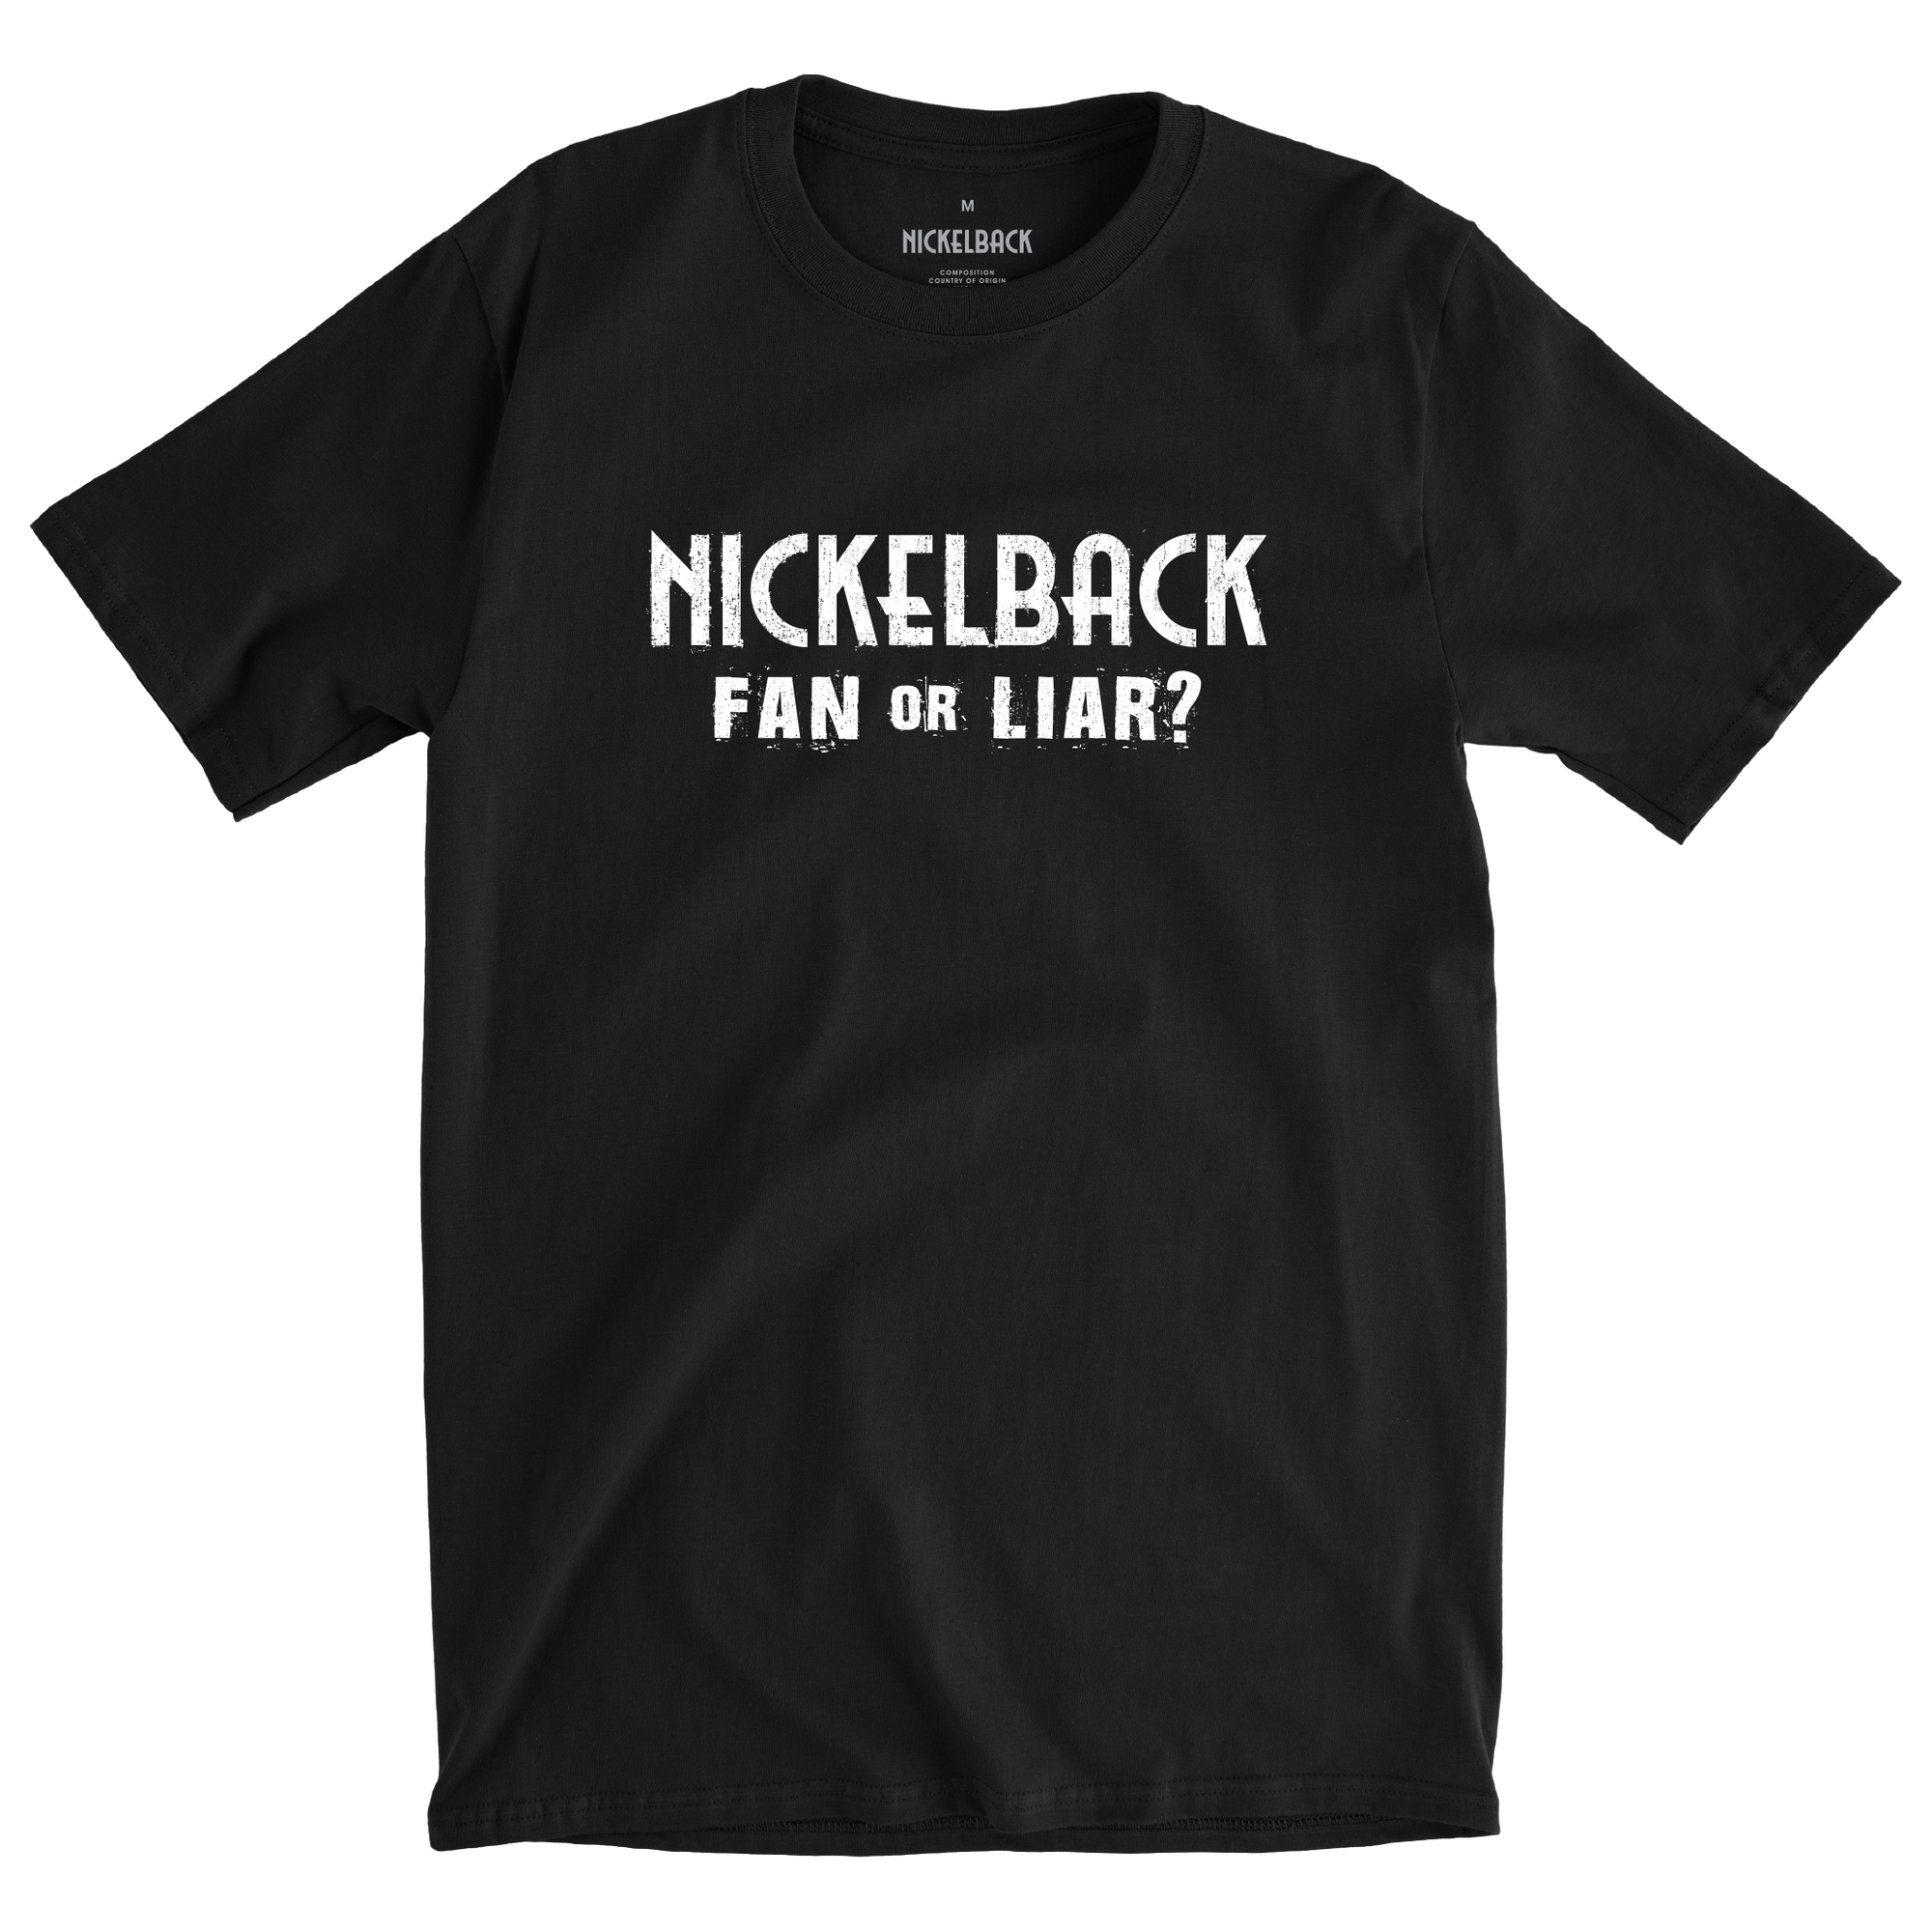 Nickelback "Fan or Liar" Tee